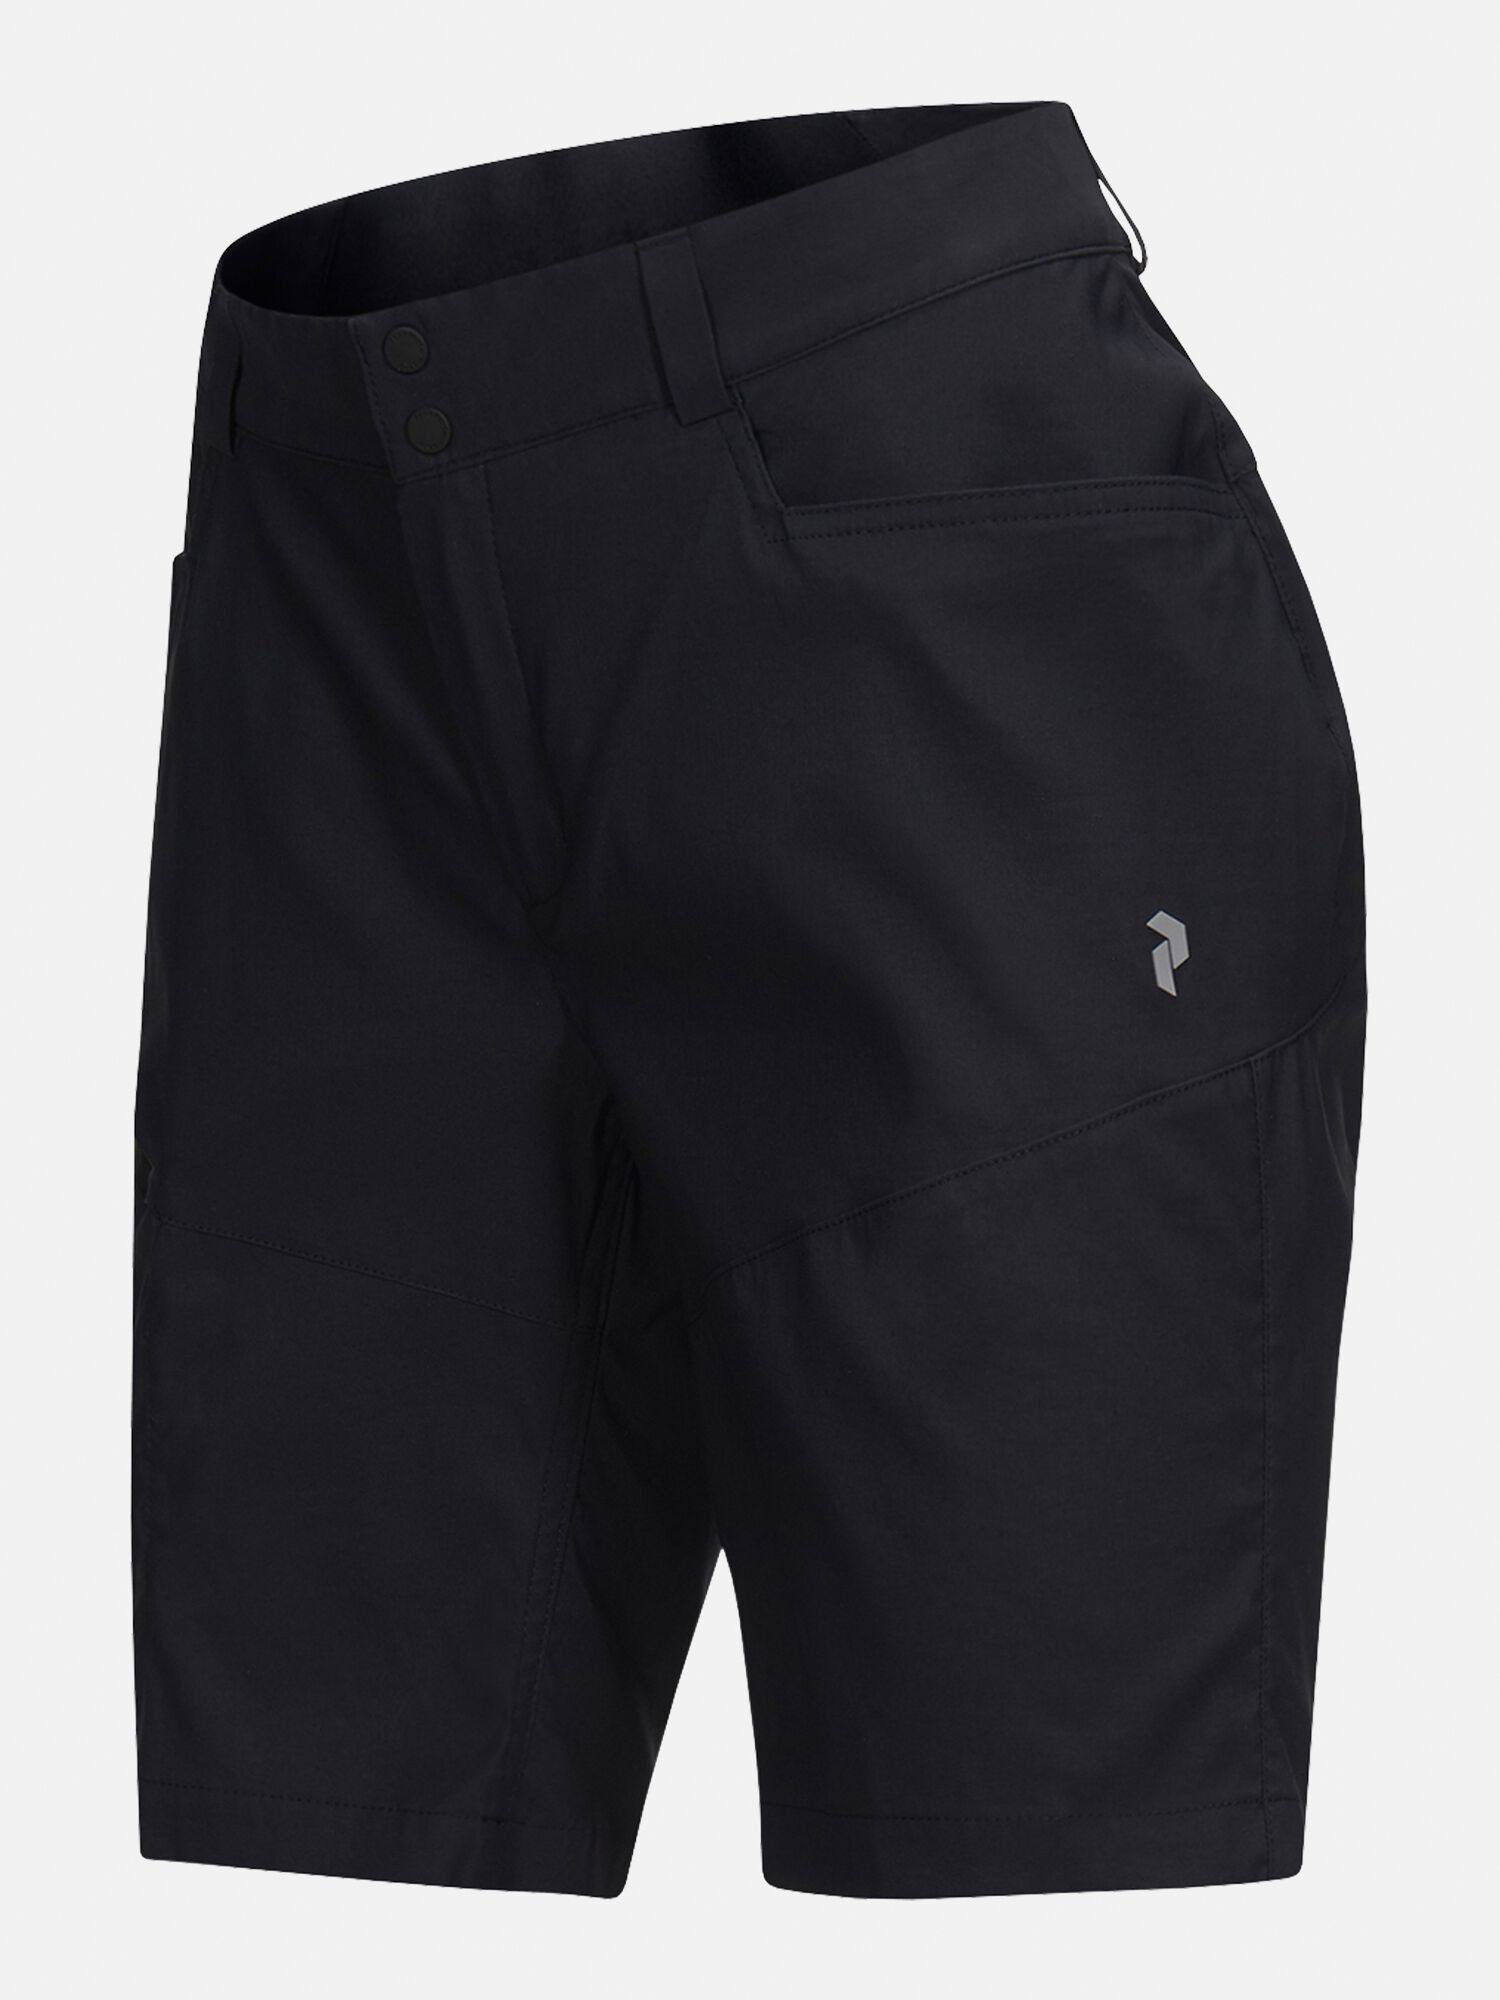 Peak Performance Iconiq W Long Shorts Black XL